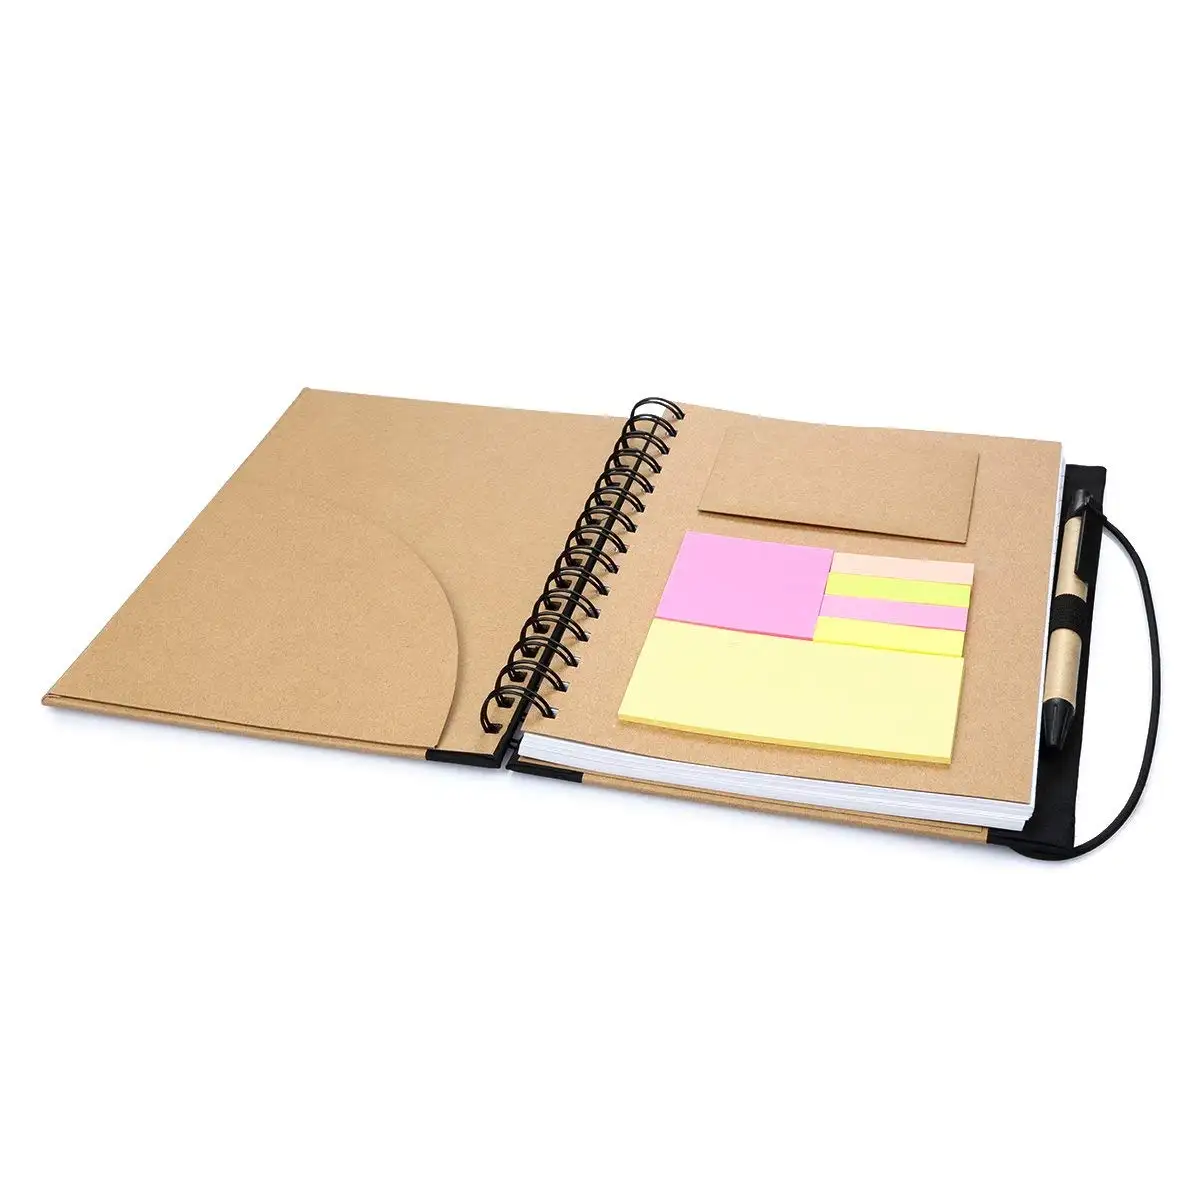 Agenda multifonction pour ordinateur portable, carnet de notes avec calculatrice de 8 chiffres, sac inclus, stylo et calculatrice